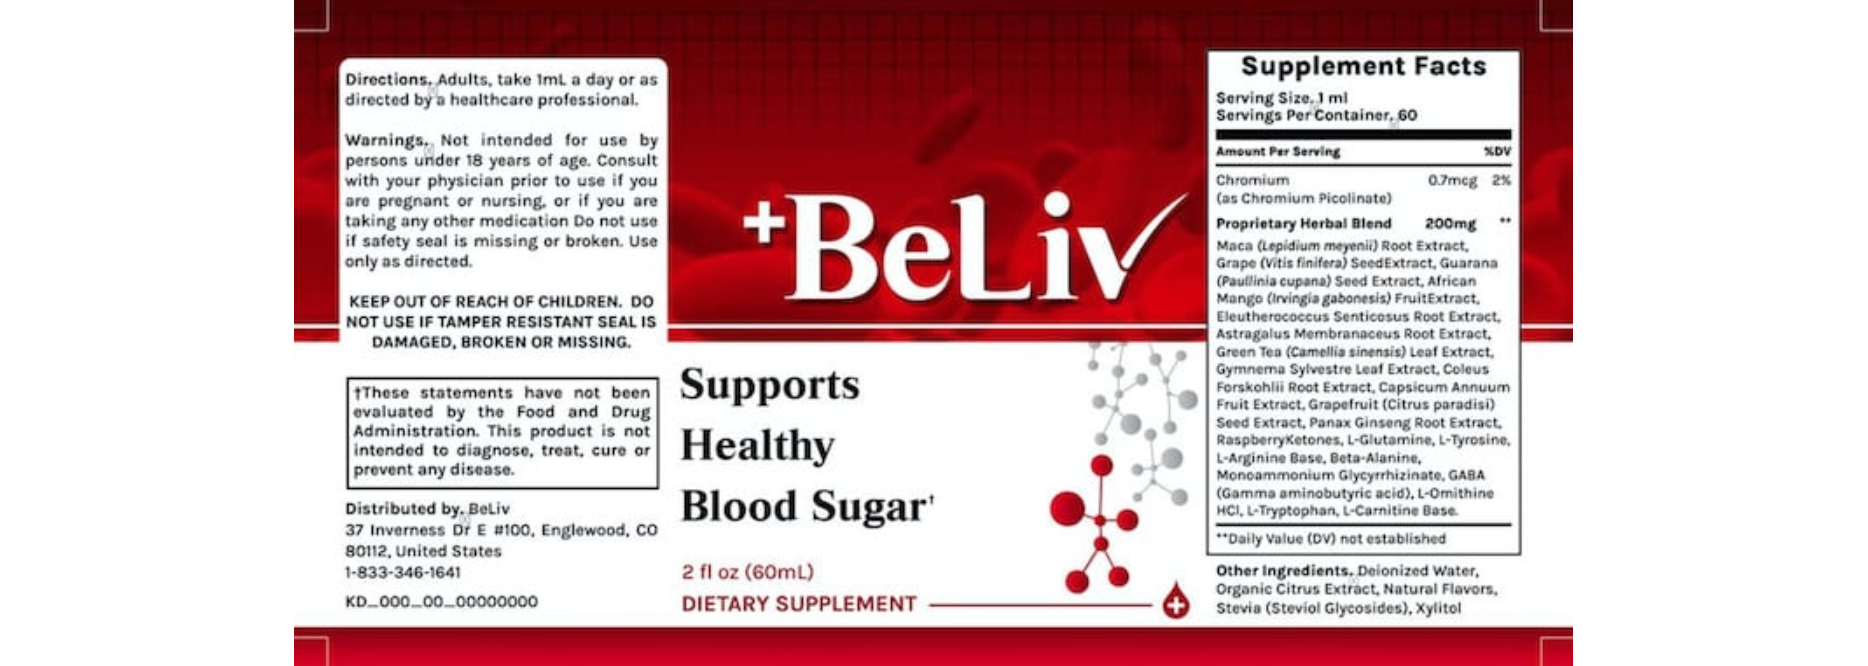 BeLiv blood sugar supplement Facts